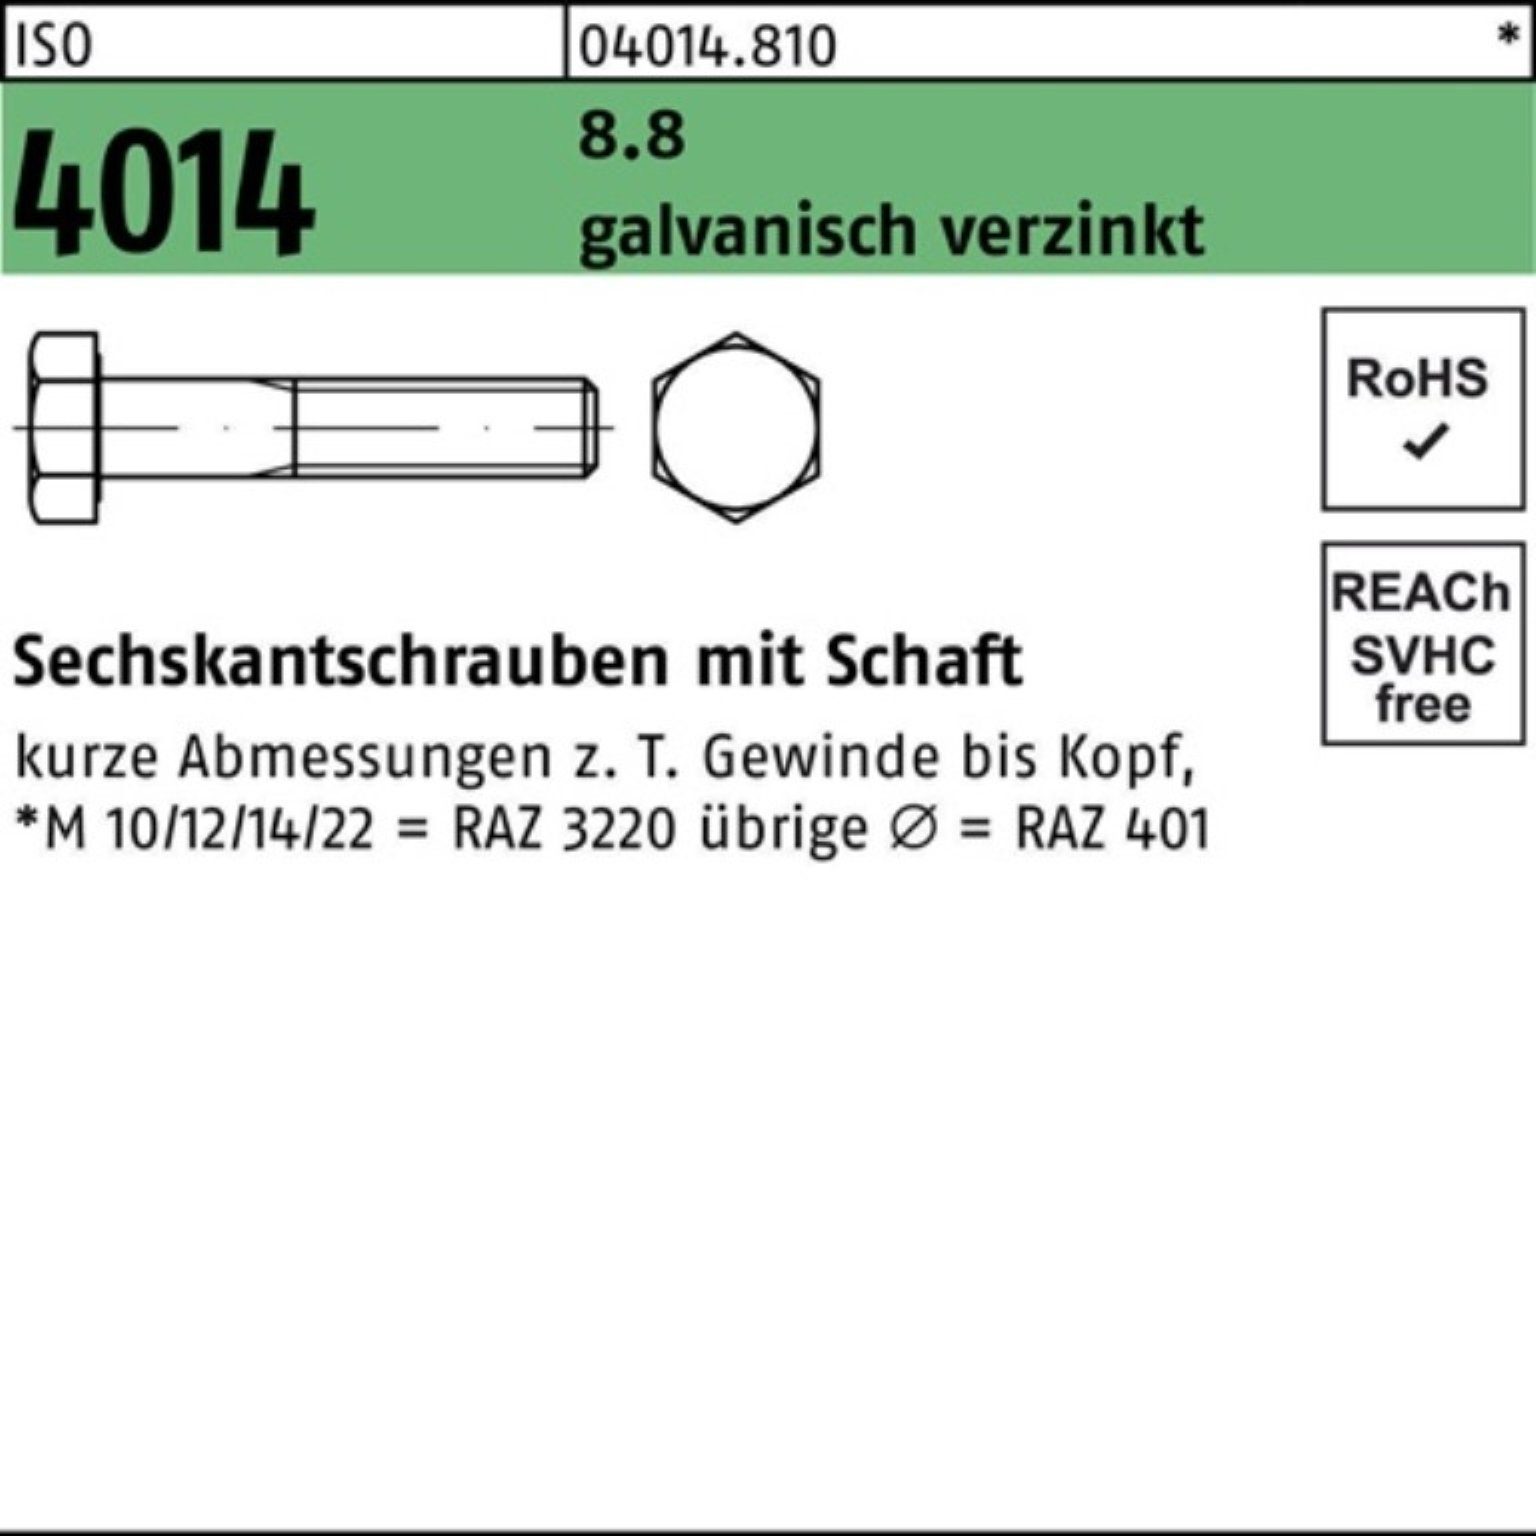 Pack Sechskantschraube Bufab 8.8 Schaft Sechskantschraube 4014 240 1 M36x ISO 100er galv.verz.